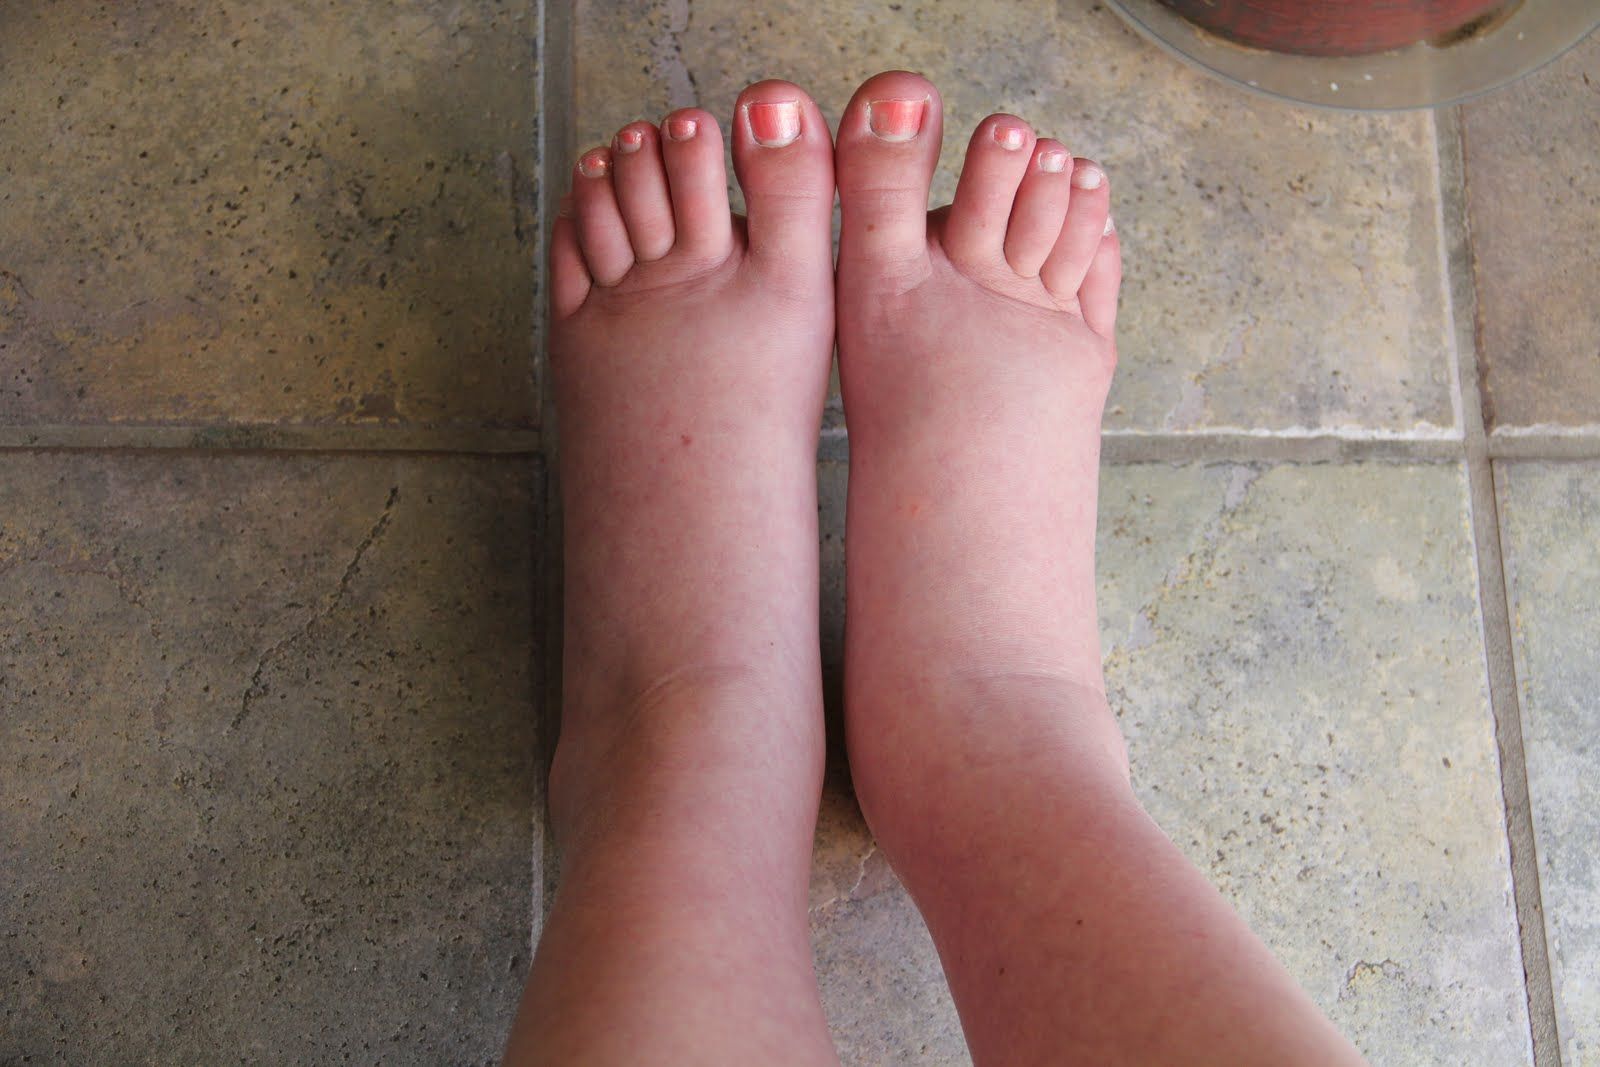 Picioare grele - remedii la indemana